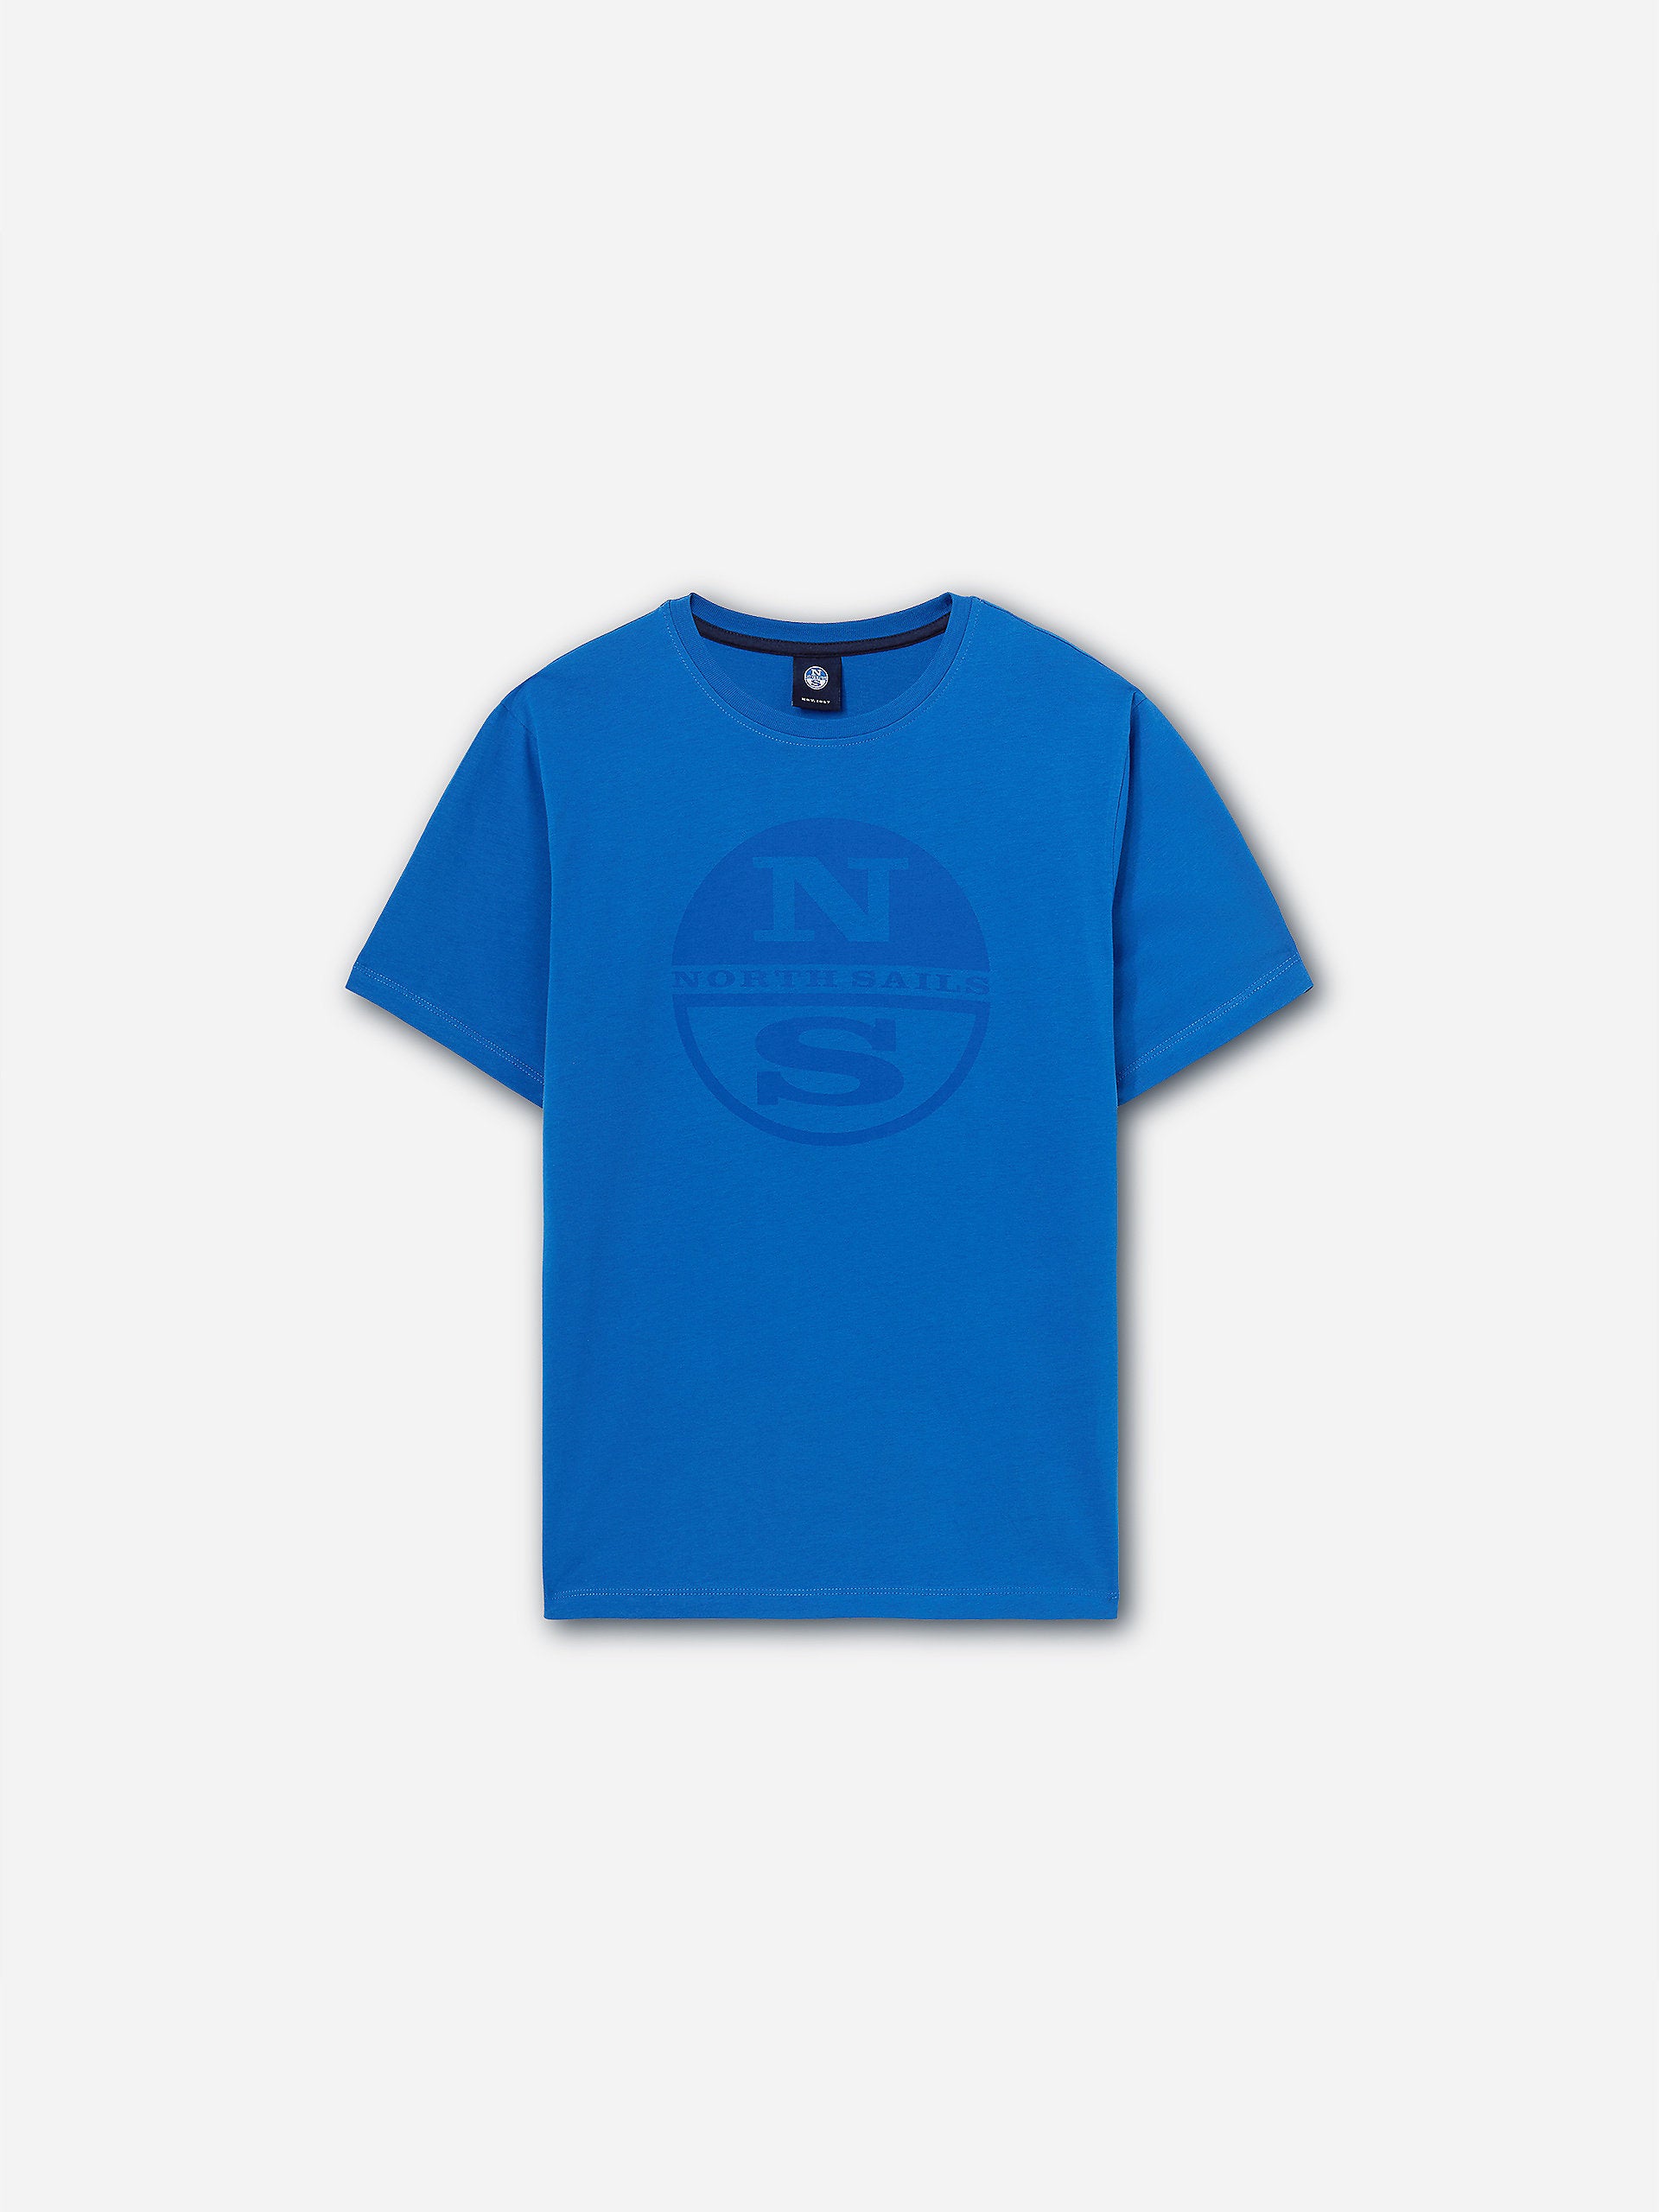 North Sails - T-shirt con maxi logoNorth SailsSnorkel blue4XL